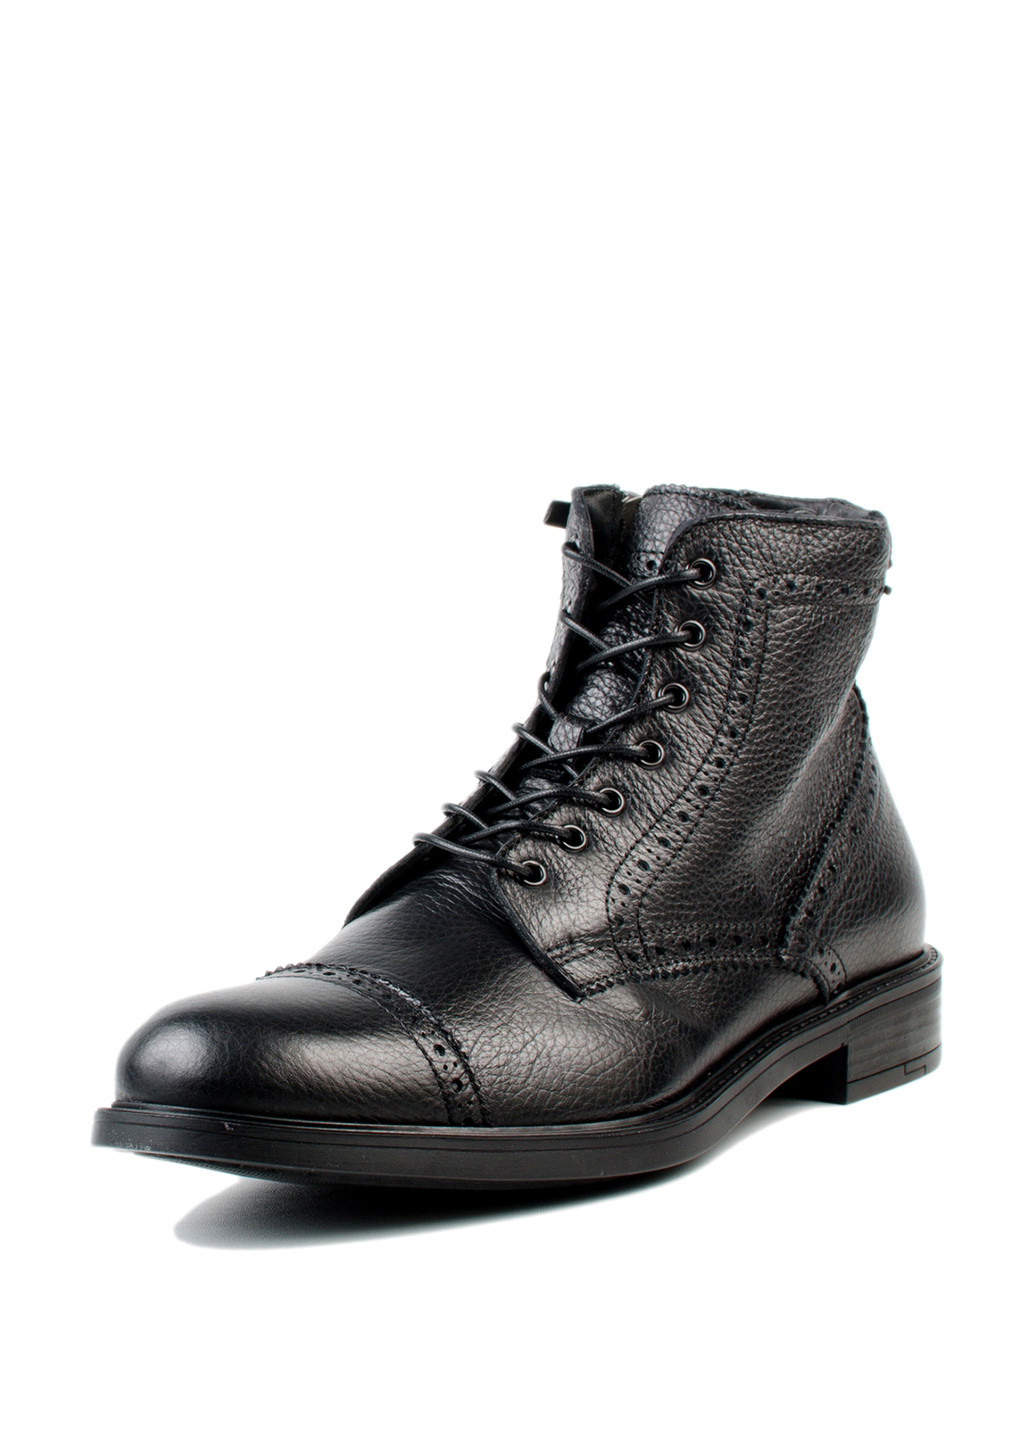 Черные зимние ботинки броги Carlo Pazolini